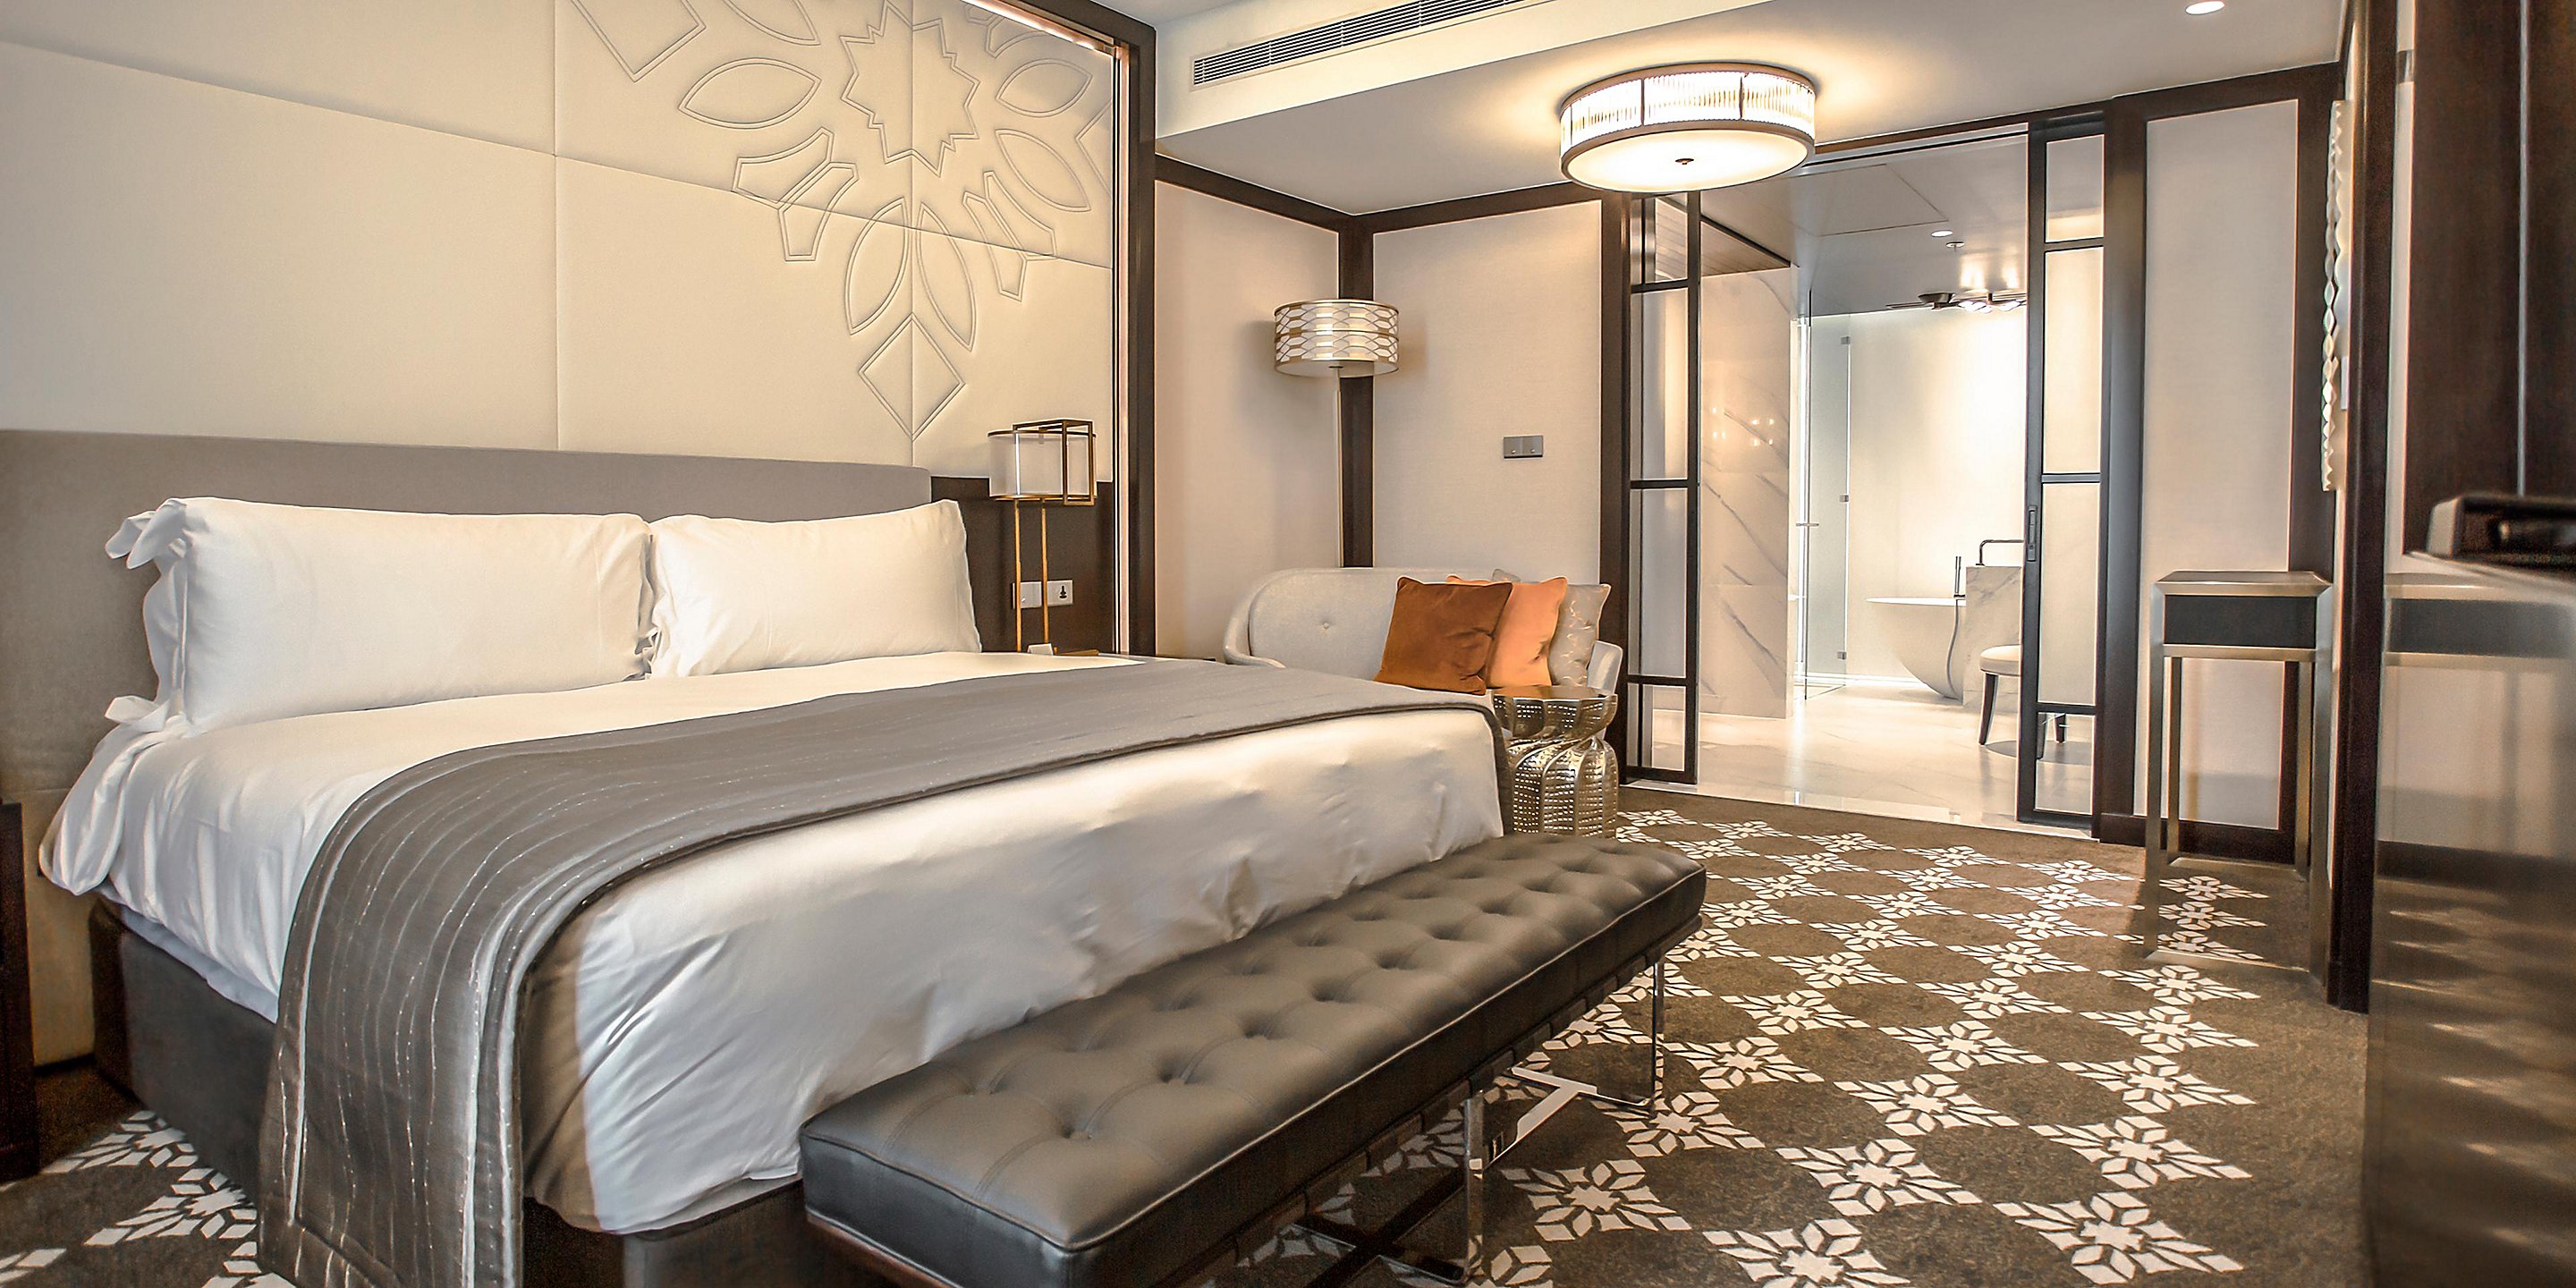 Commercial Hotel Furniture Bedroom Sets High Density Soft Mattress